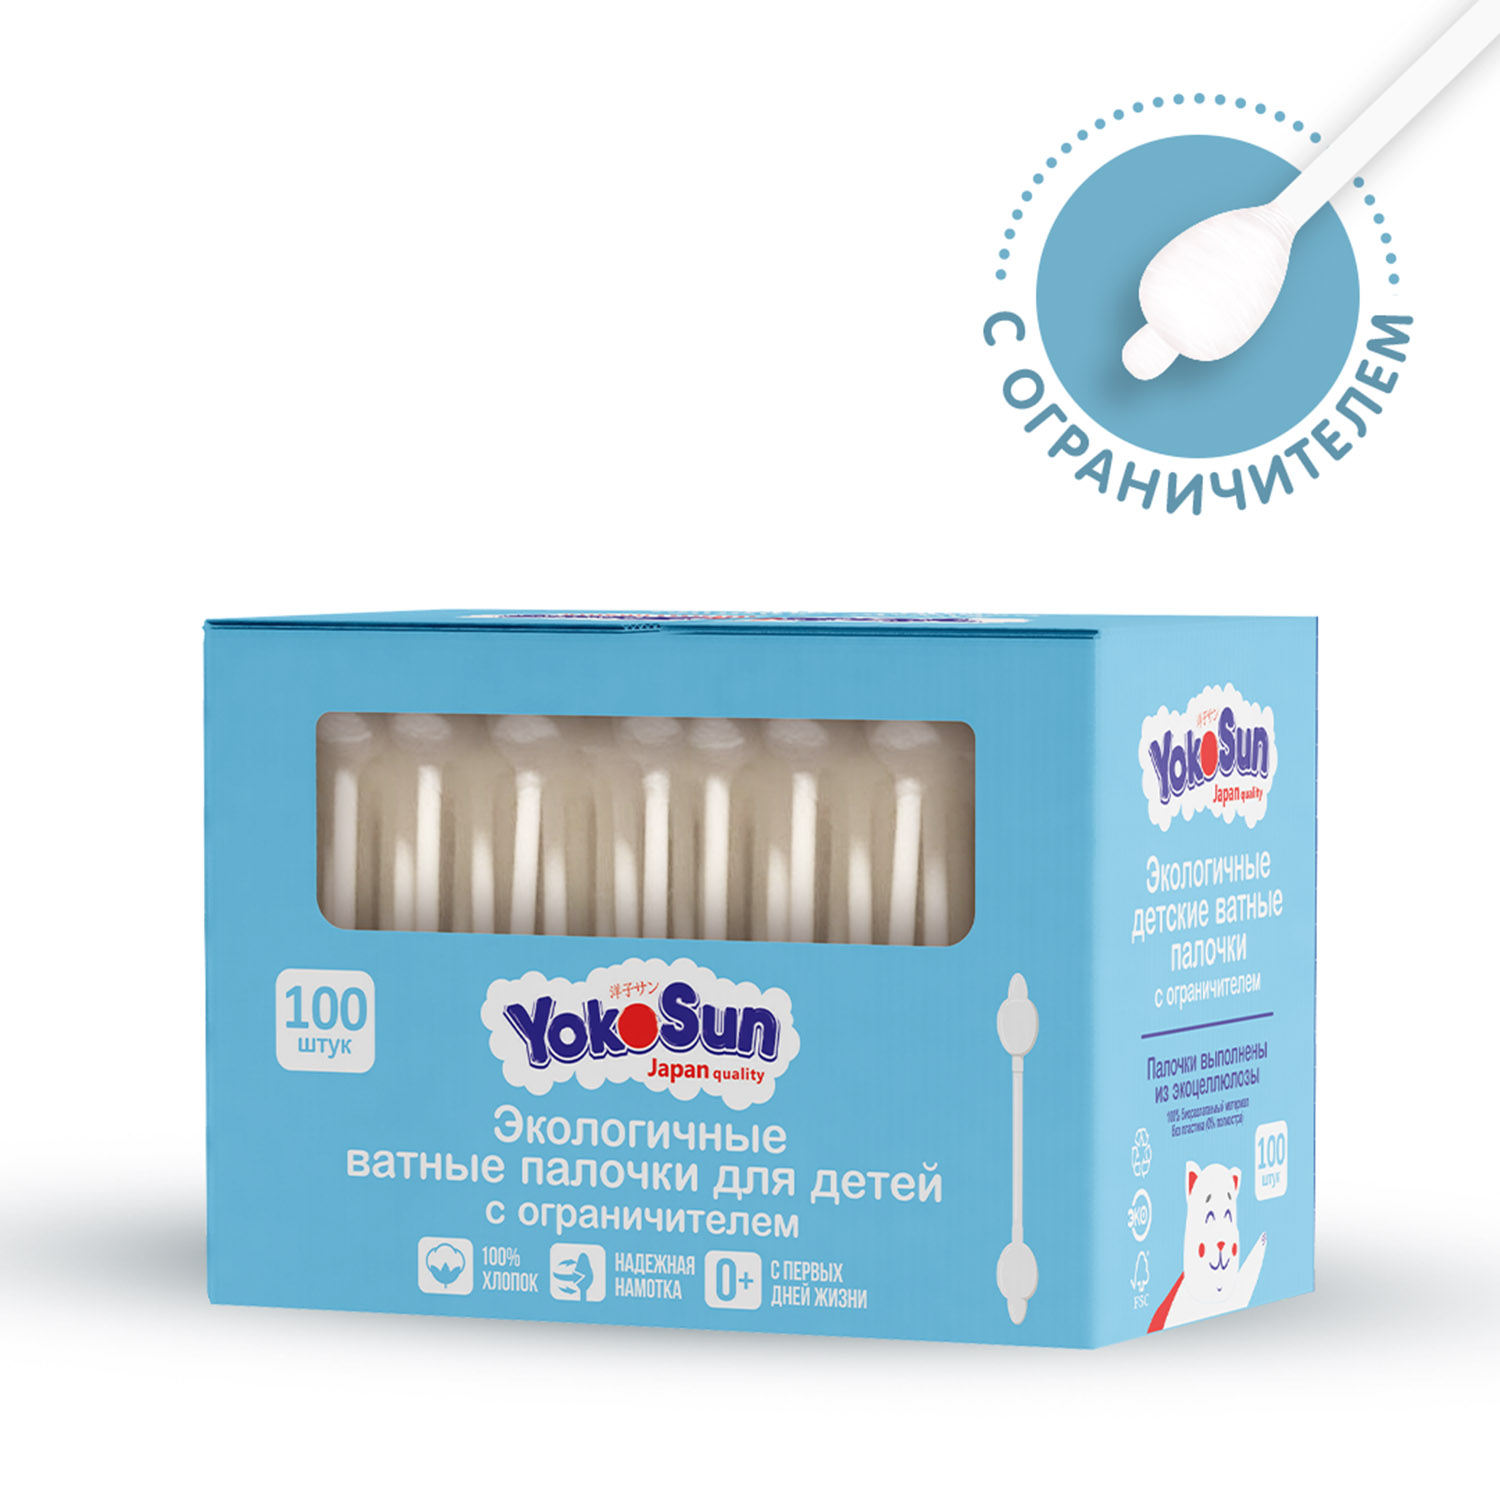 Палочки ватные YokoSun для детей экологичные с ограничителем 100шт - фото 2